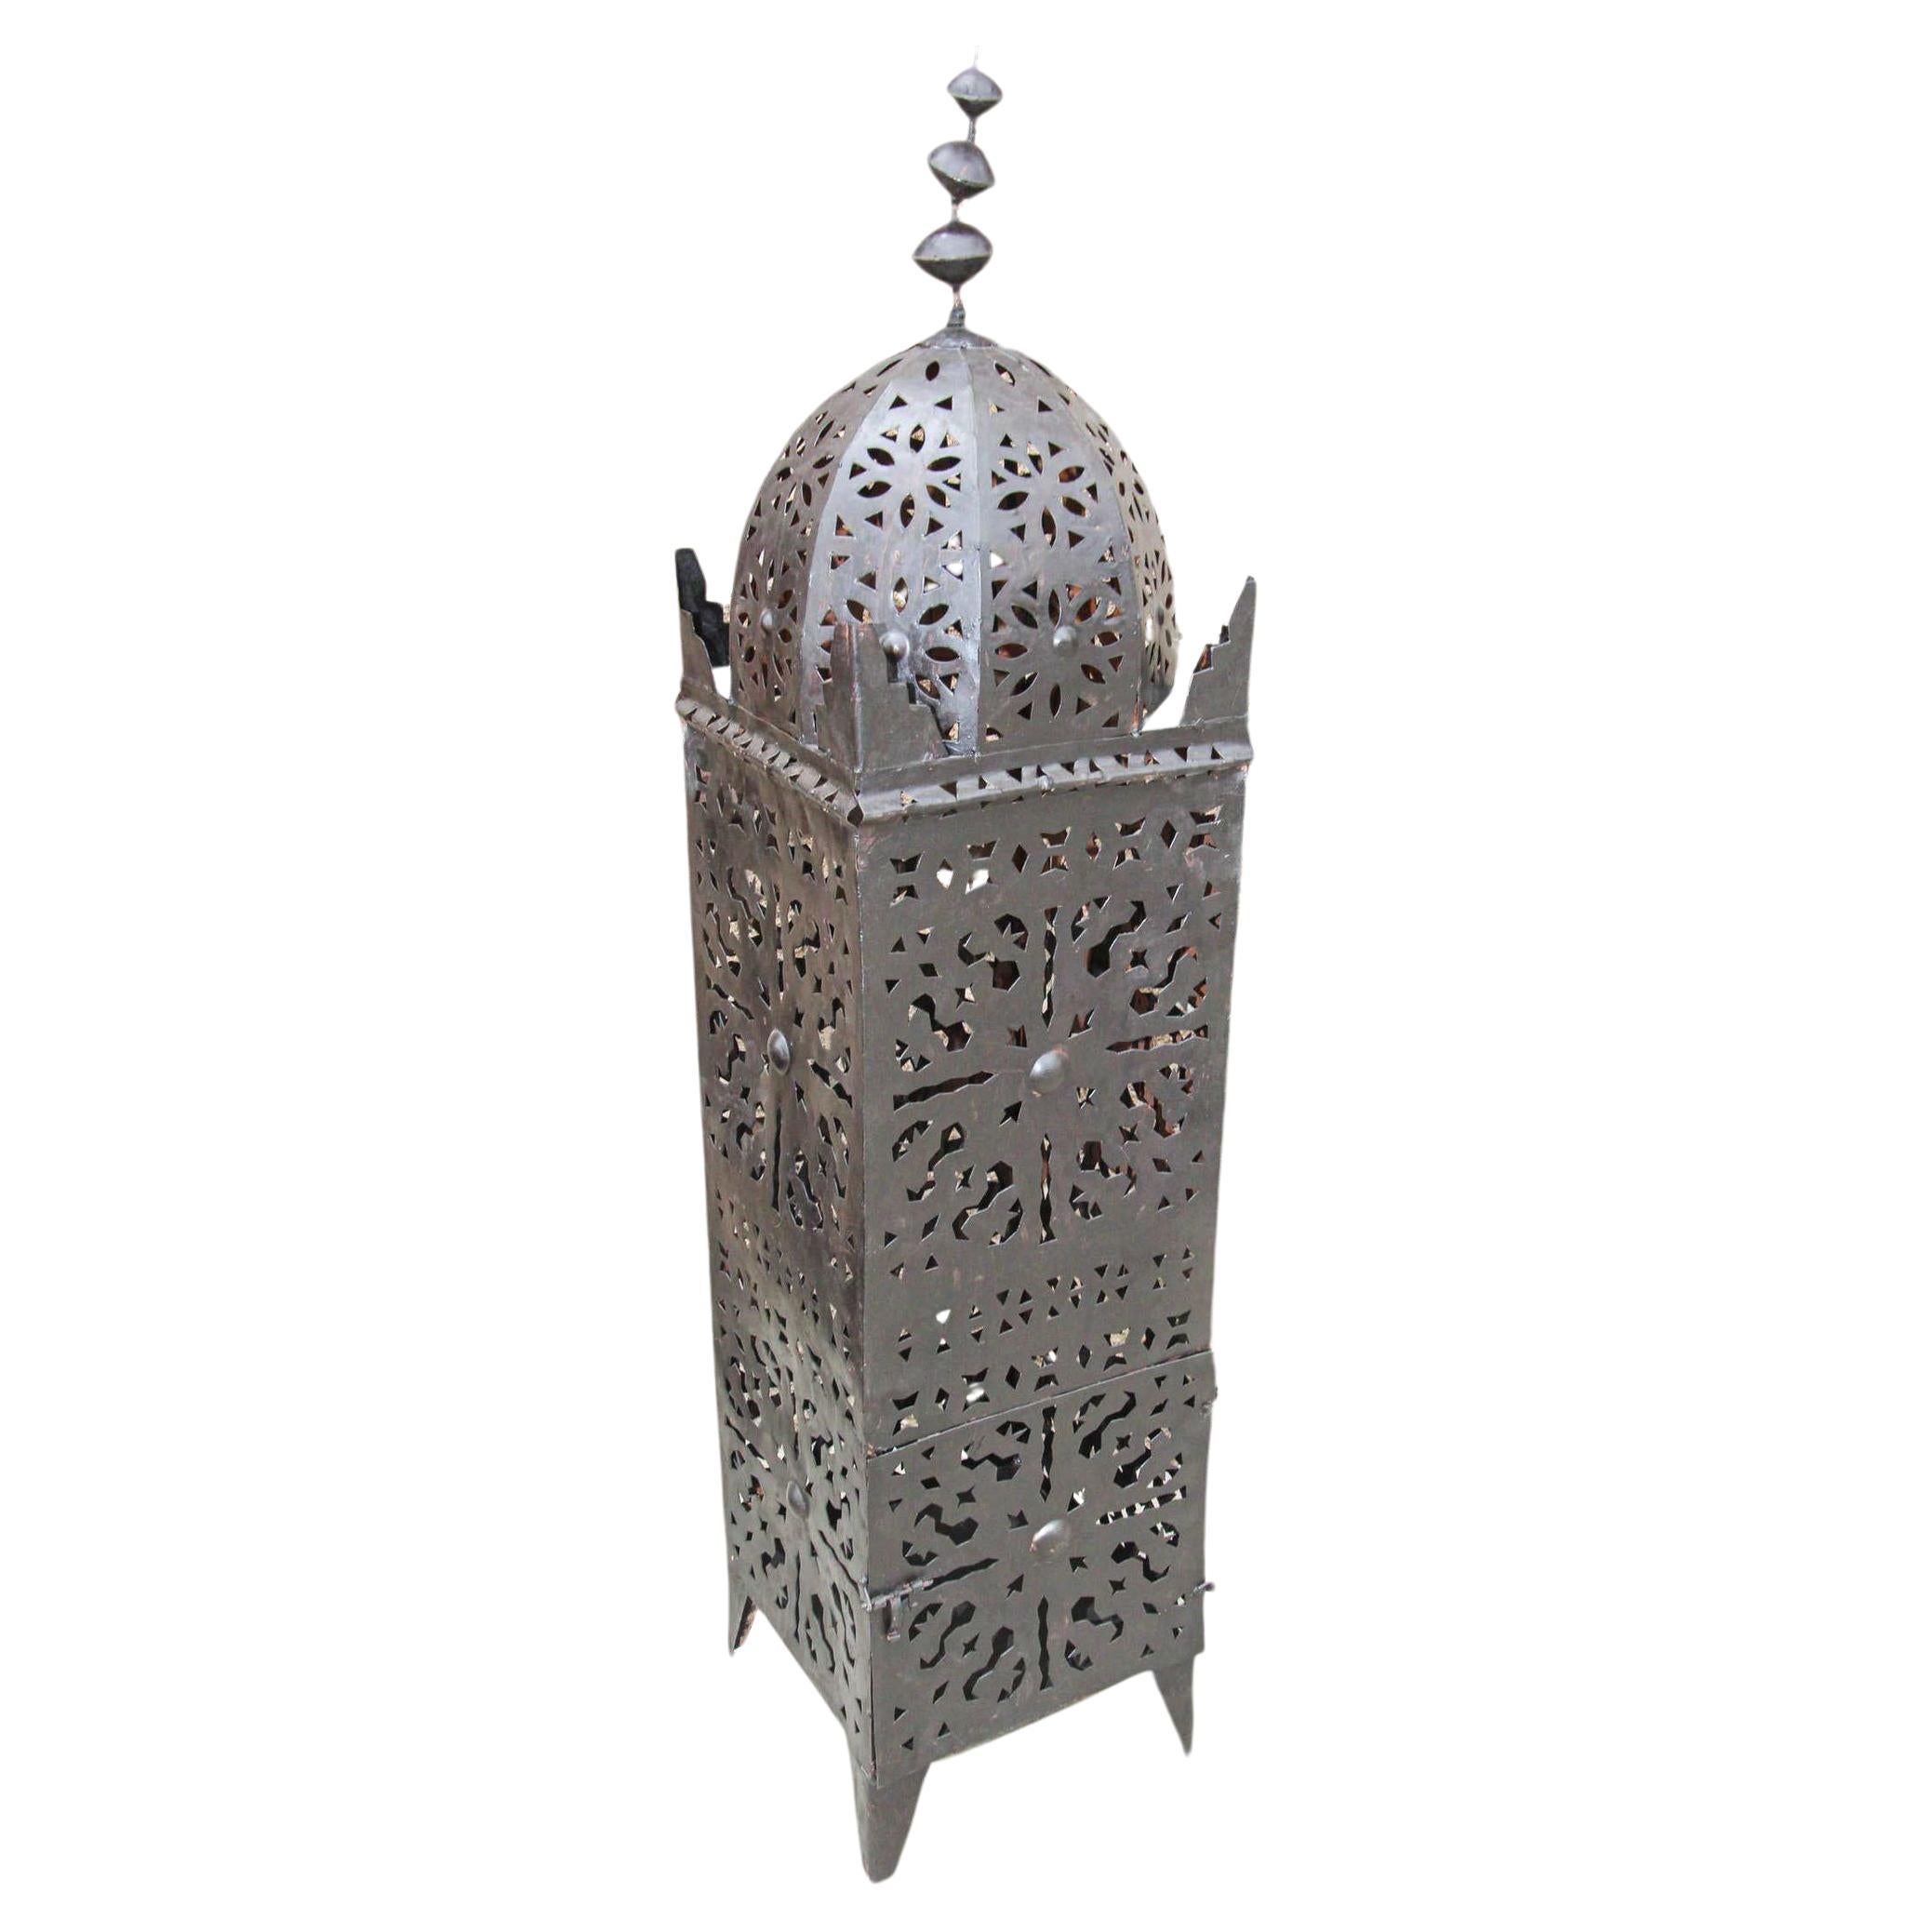 Große marokkanische Vintage-Kerzenlaterne aus Metall für den Außenbereich.
Kerzenlampe in Form einer Hurricane Kasbah, handgefertigt in Marokko von Kunsthandwerkern, Metall handgeschnitten und gehämmert, Öffnung an der Vorderseite für